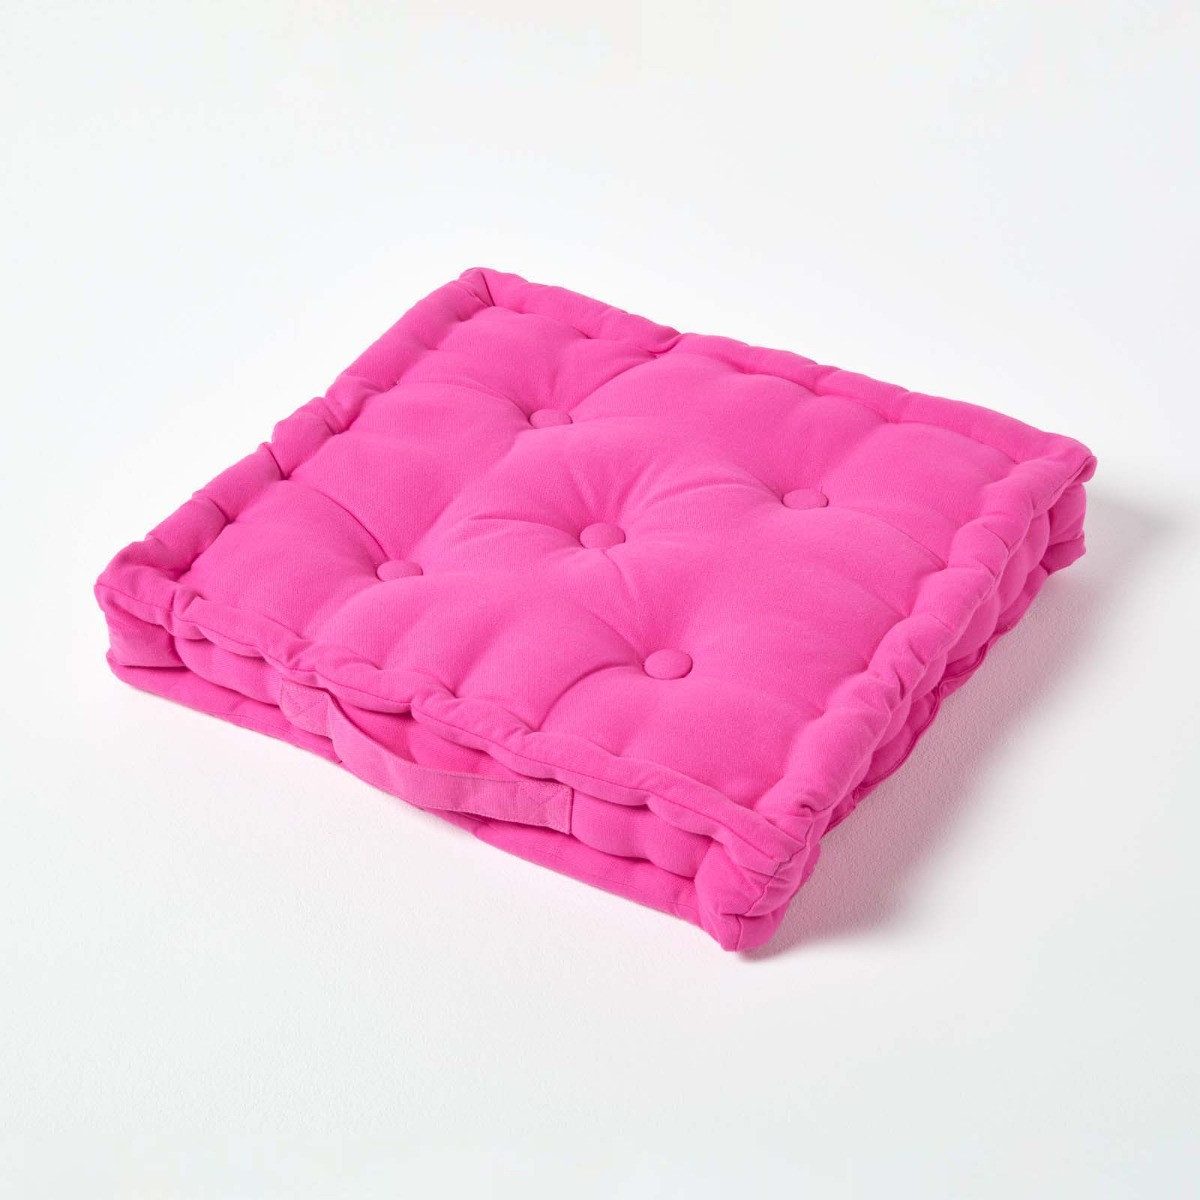 Homescapes Bodenkissen Sitzkissen unifarben pink 50 x 50 cm